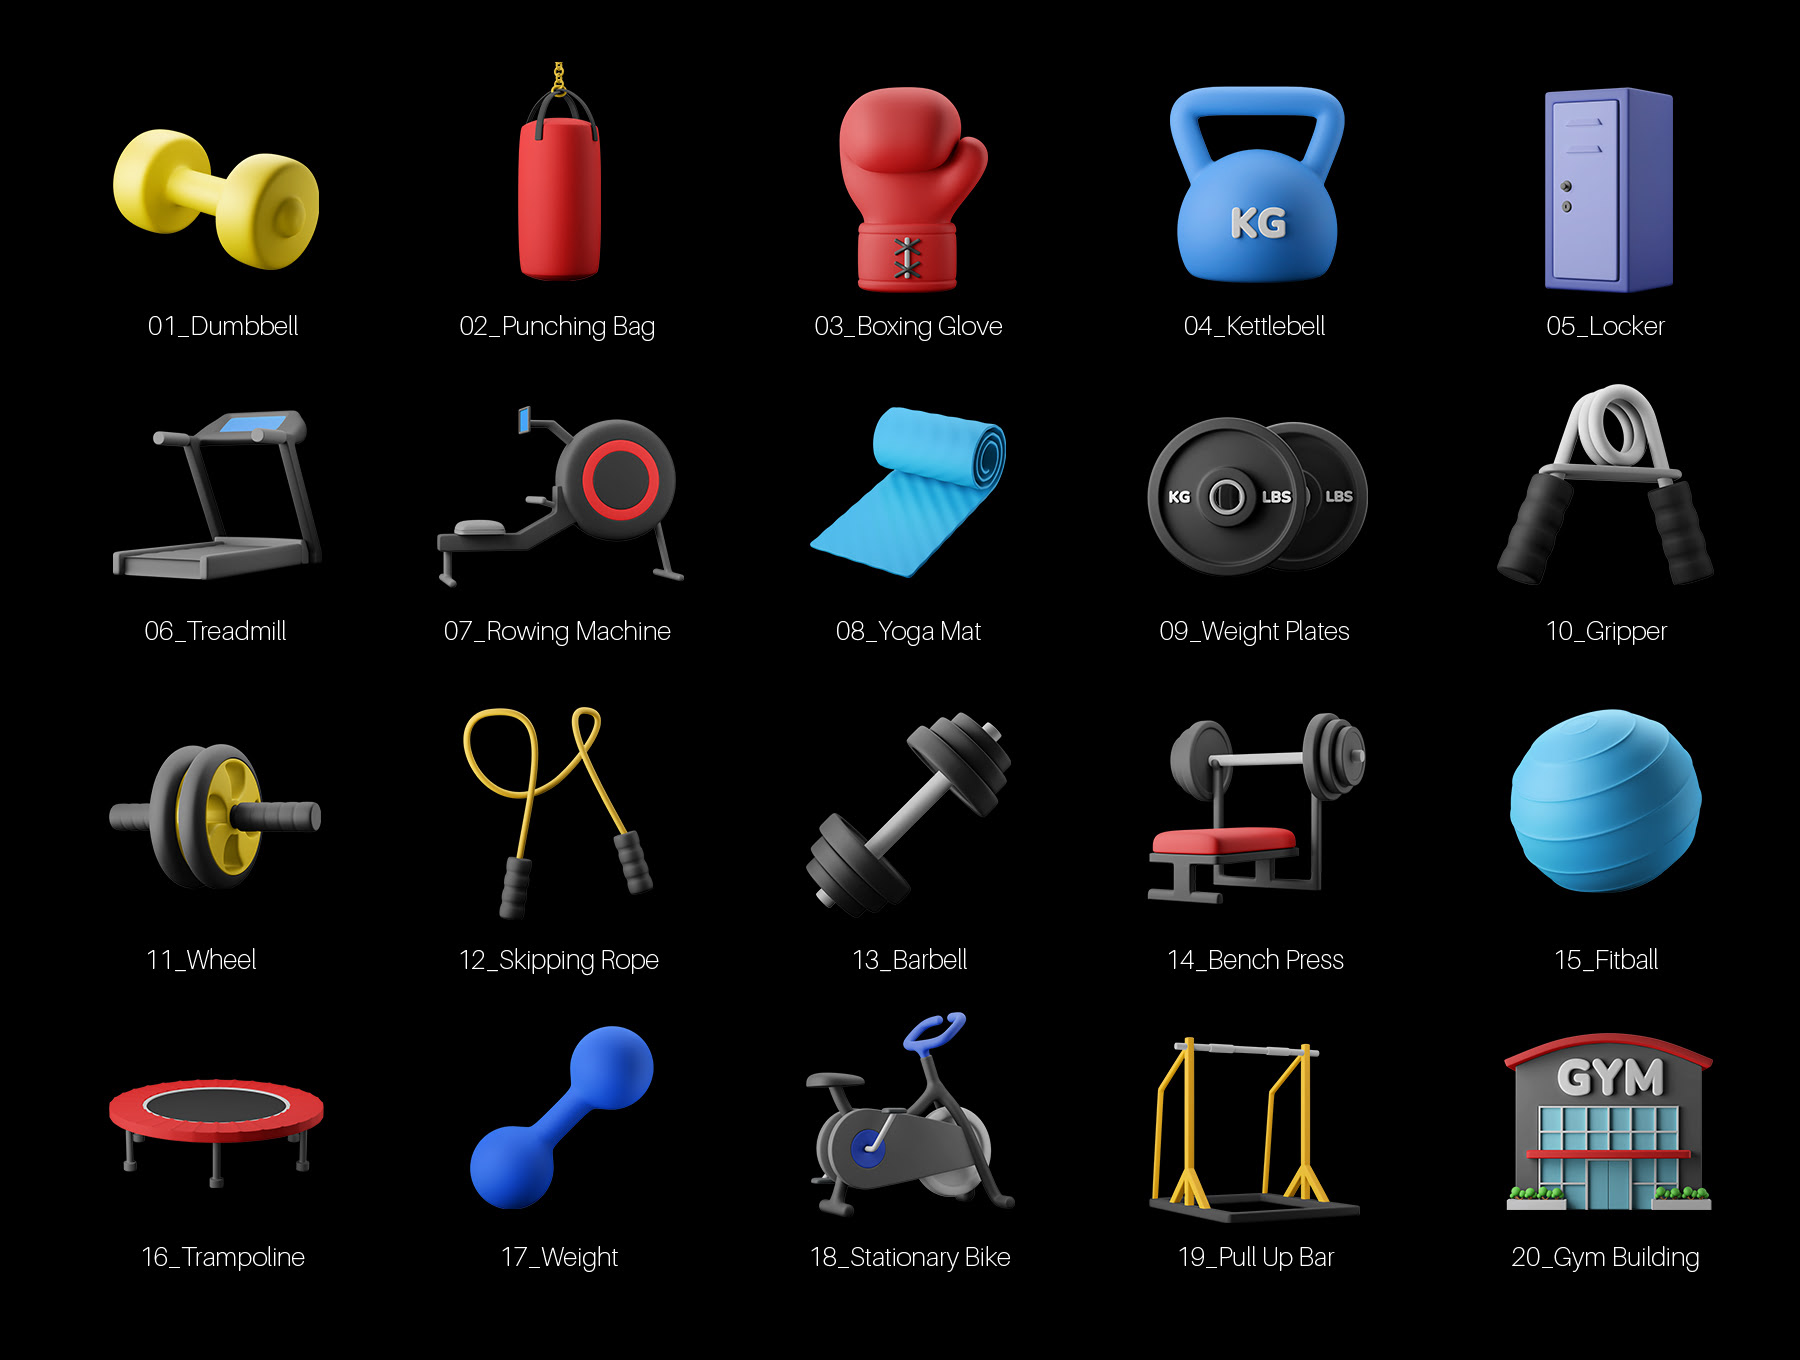 健身房设备3D图标包 Fitness Gym Equipment 3D Icon Pack c4d, blender, psd格式-3D/图标-到位啦UI